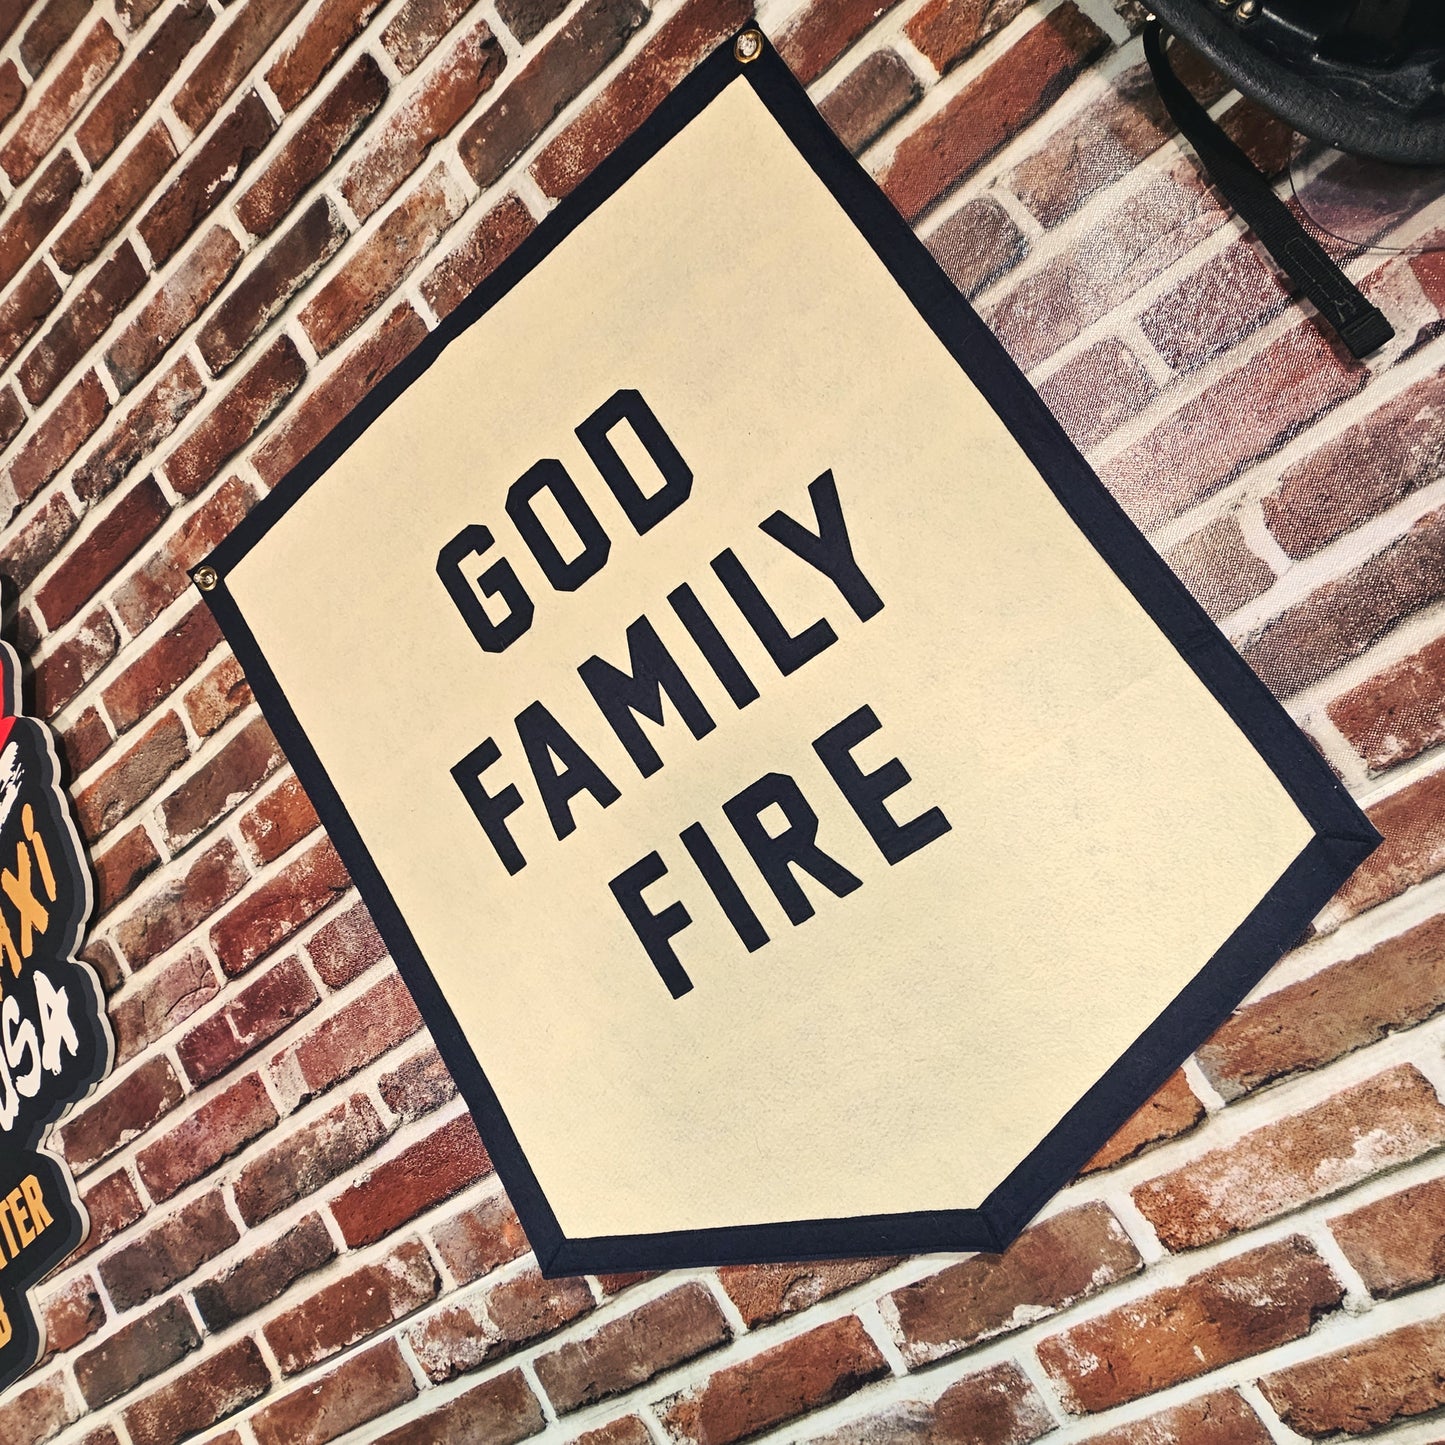 God Family Fire Felt Banner